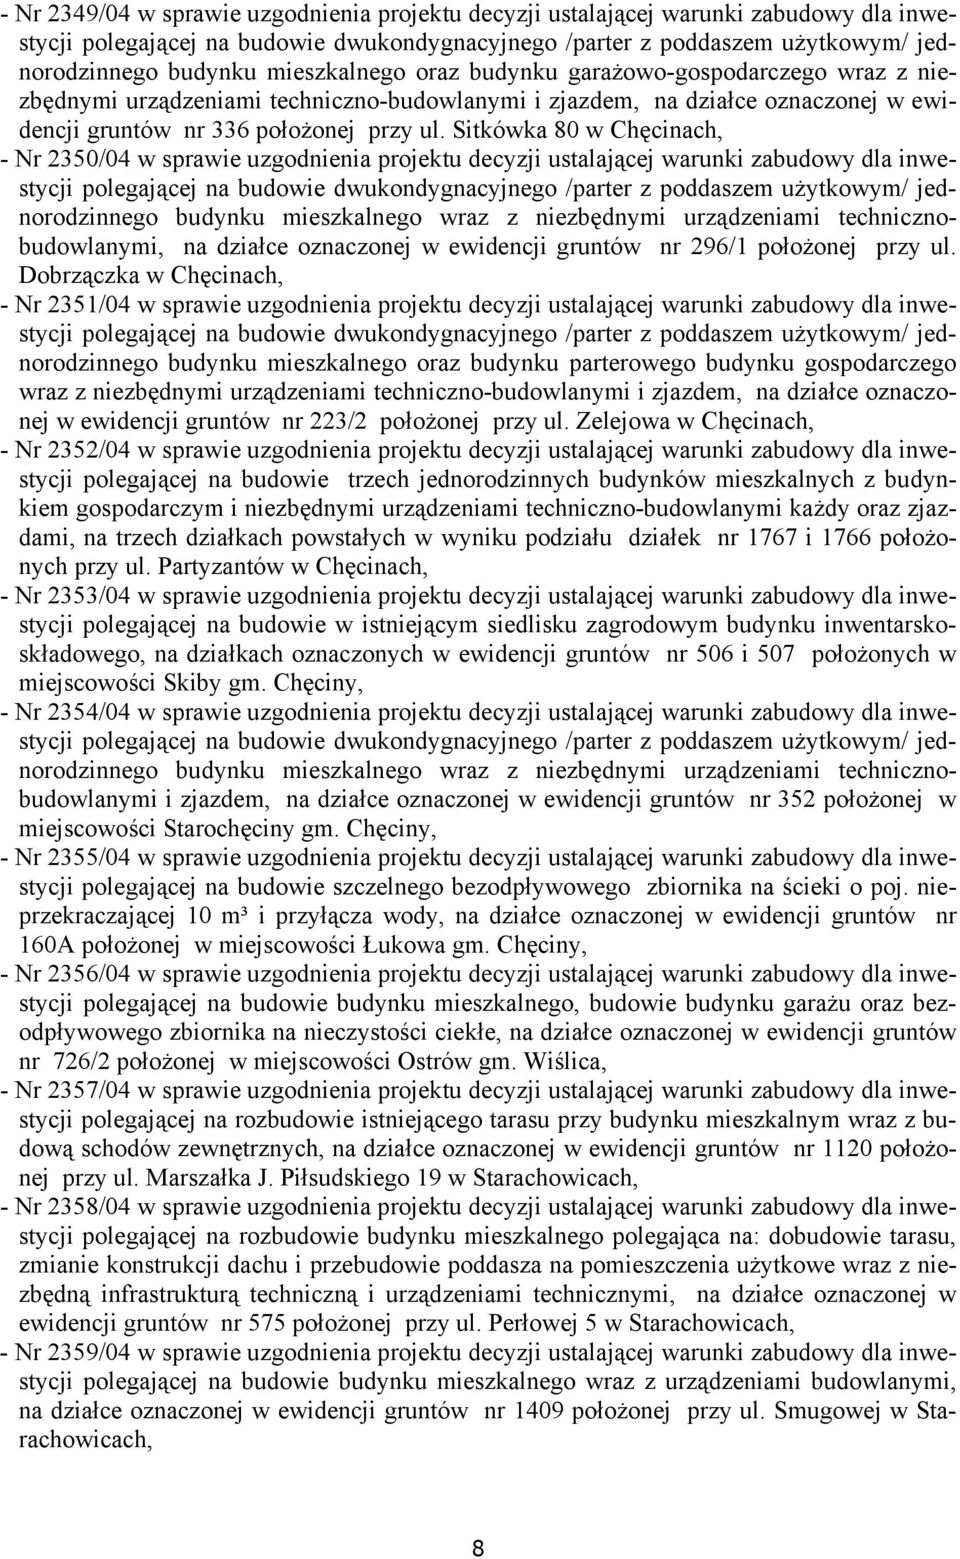 Sitkówka 80 w Chęcinach, - Nr 2350/04 w sprawie uzgodnienia projektu decyzji ustalającej warunki zabudowy dla inwestycji polegającej na budowie dwukondygnacyjnego /parter z poddaszem użytkowym/